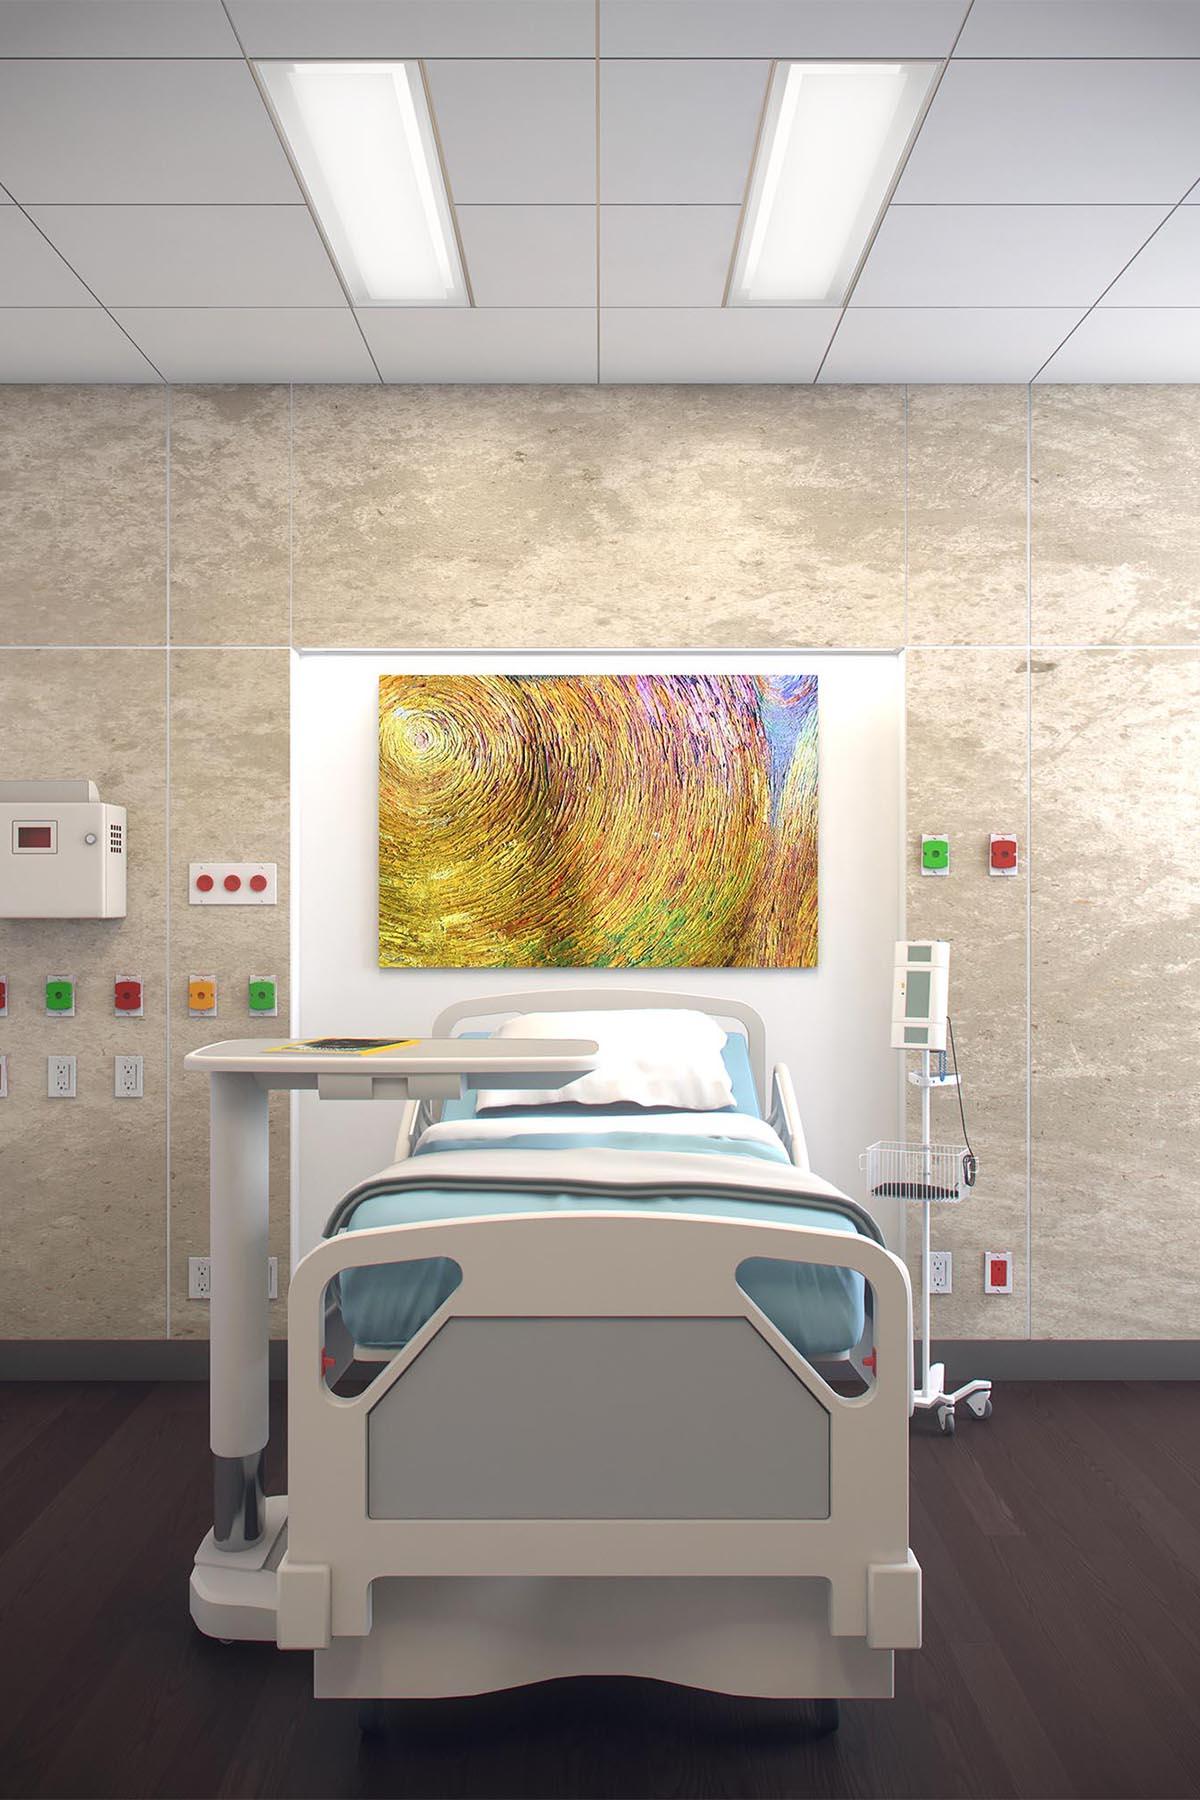 Zephyr Patient Room